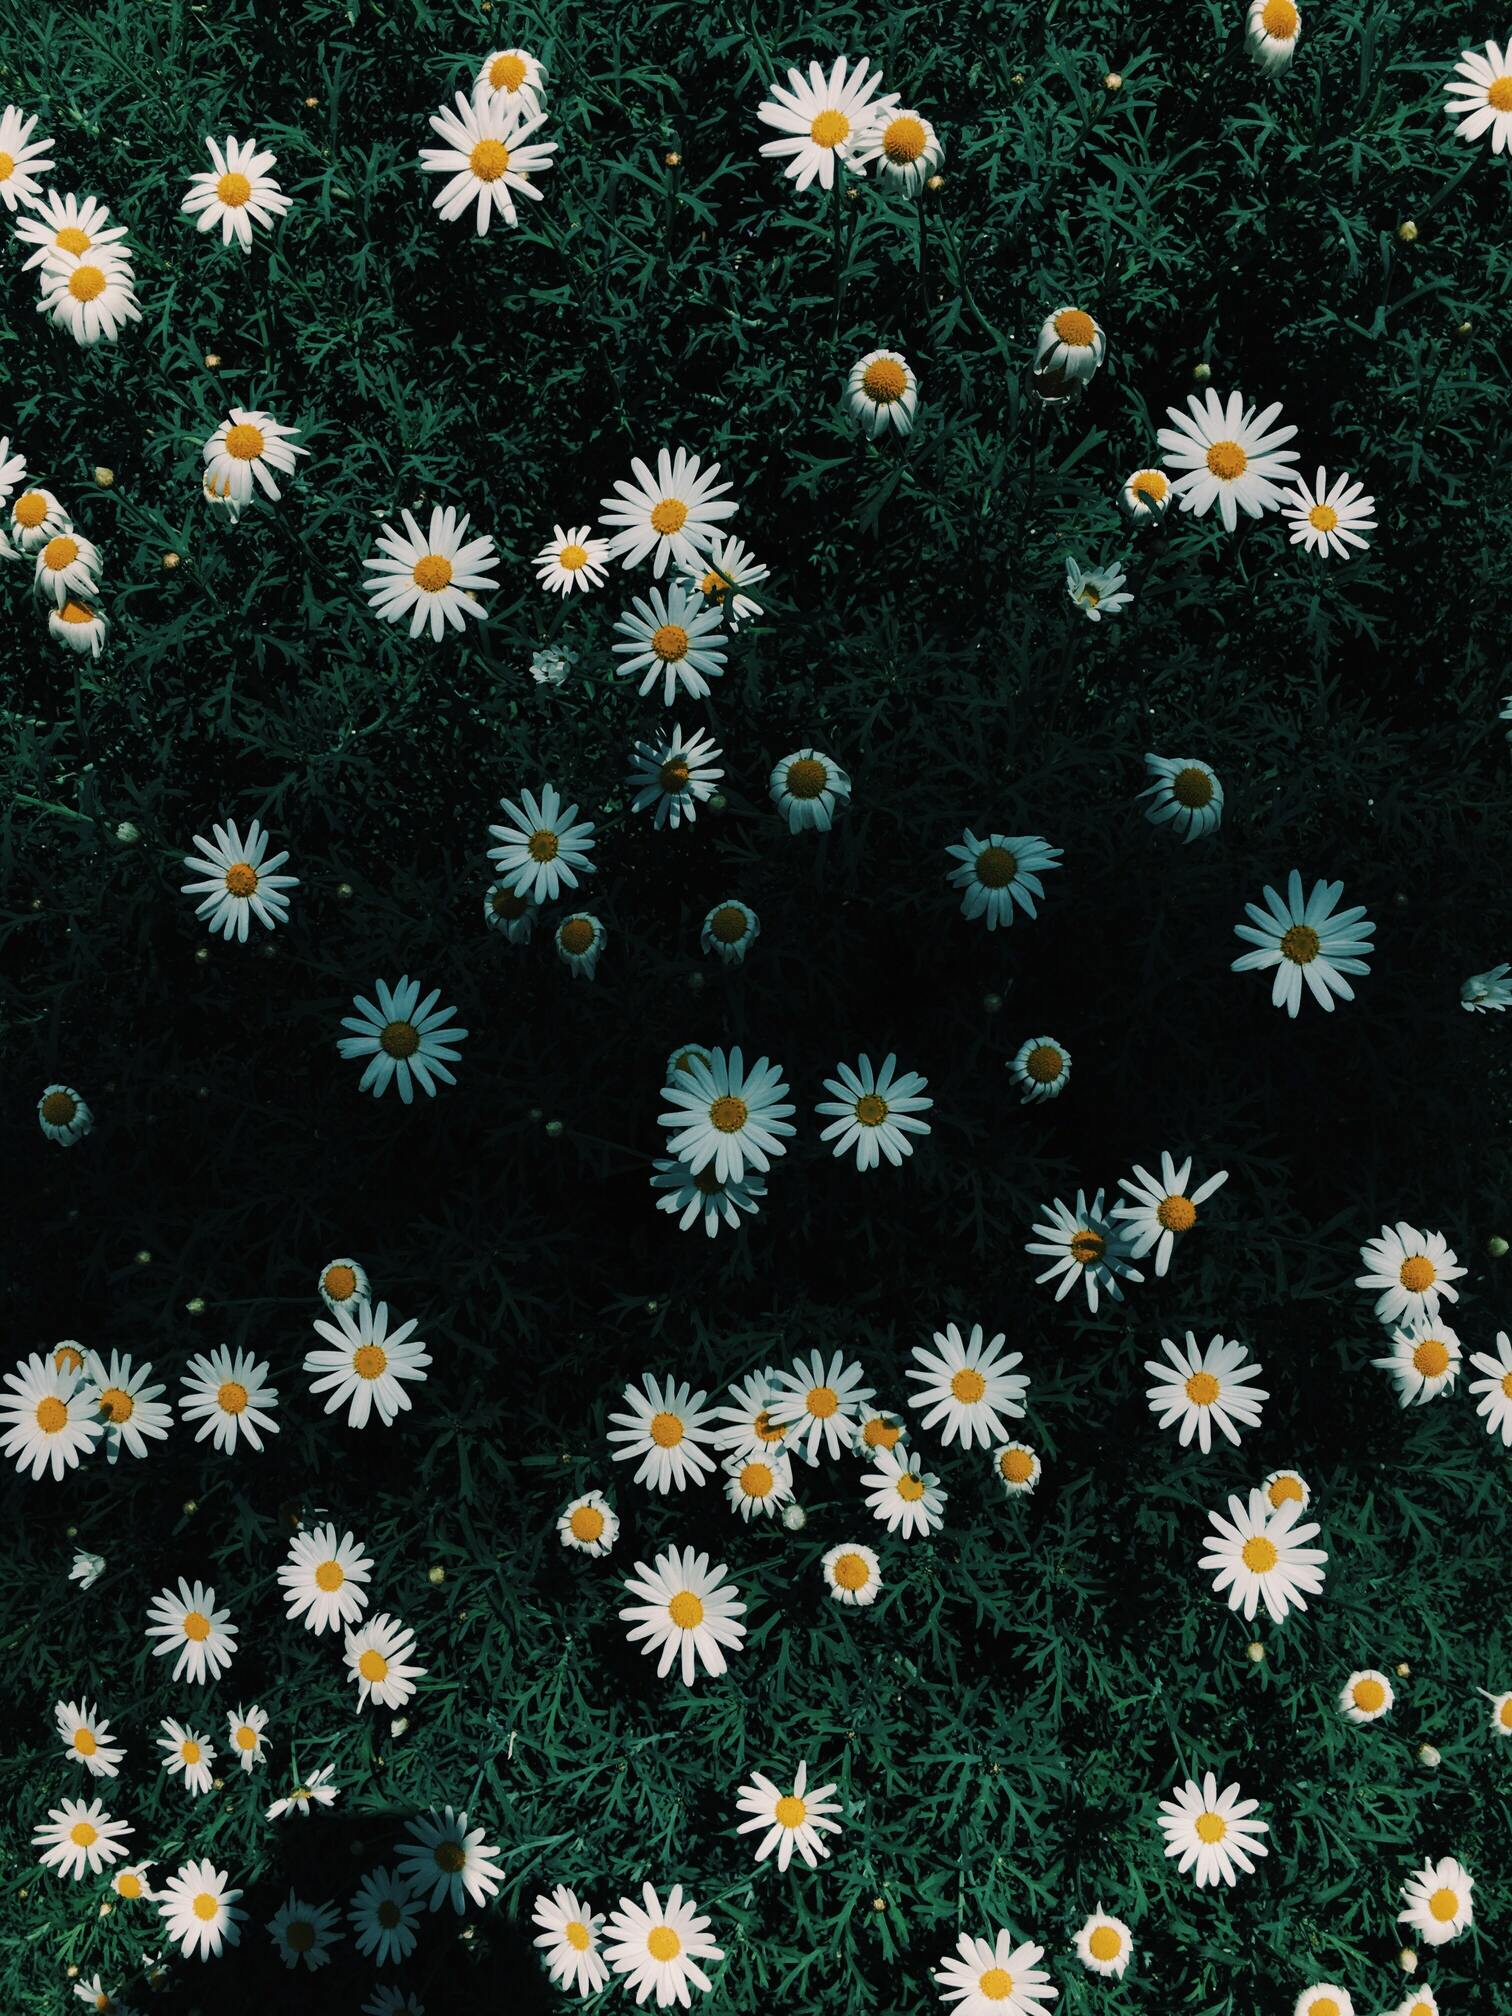 Hoa cúc dại giản dị và gần gũi nhưng lại ẩn chứa một sức mạnh tuyệt vời. Xem những hình ảnh về hoa cúc dại sẽ giúp bạn hiểu rõ hơn về ý nghĩa của sự bền vững và kiên trì trong cuộc sống.